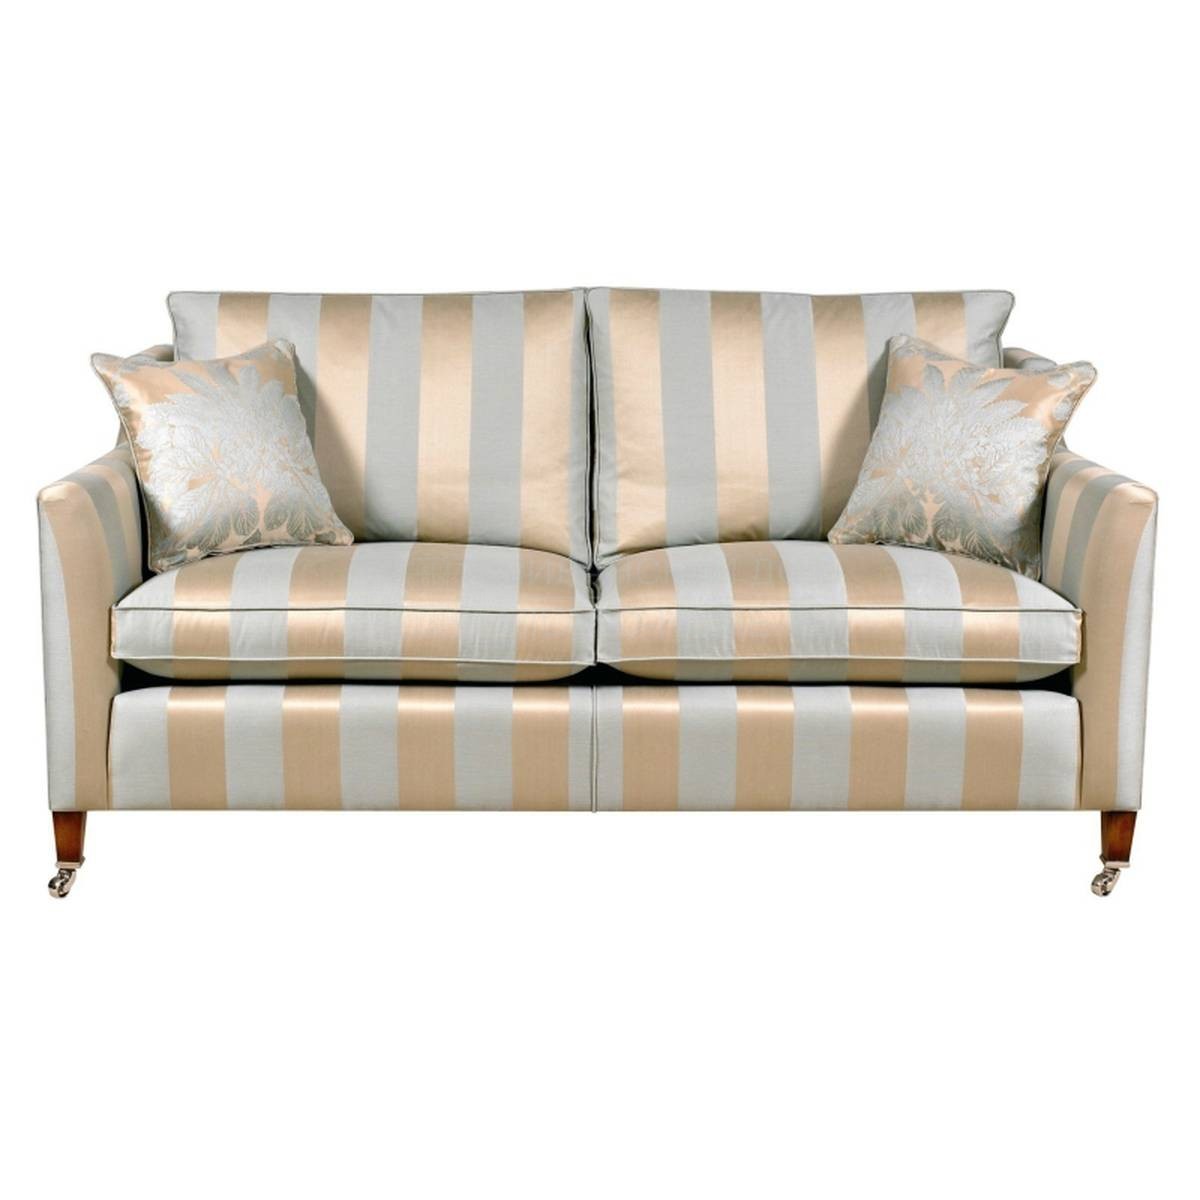 Прямой диван George sofa из Великобритании фабрики DURESTA